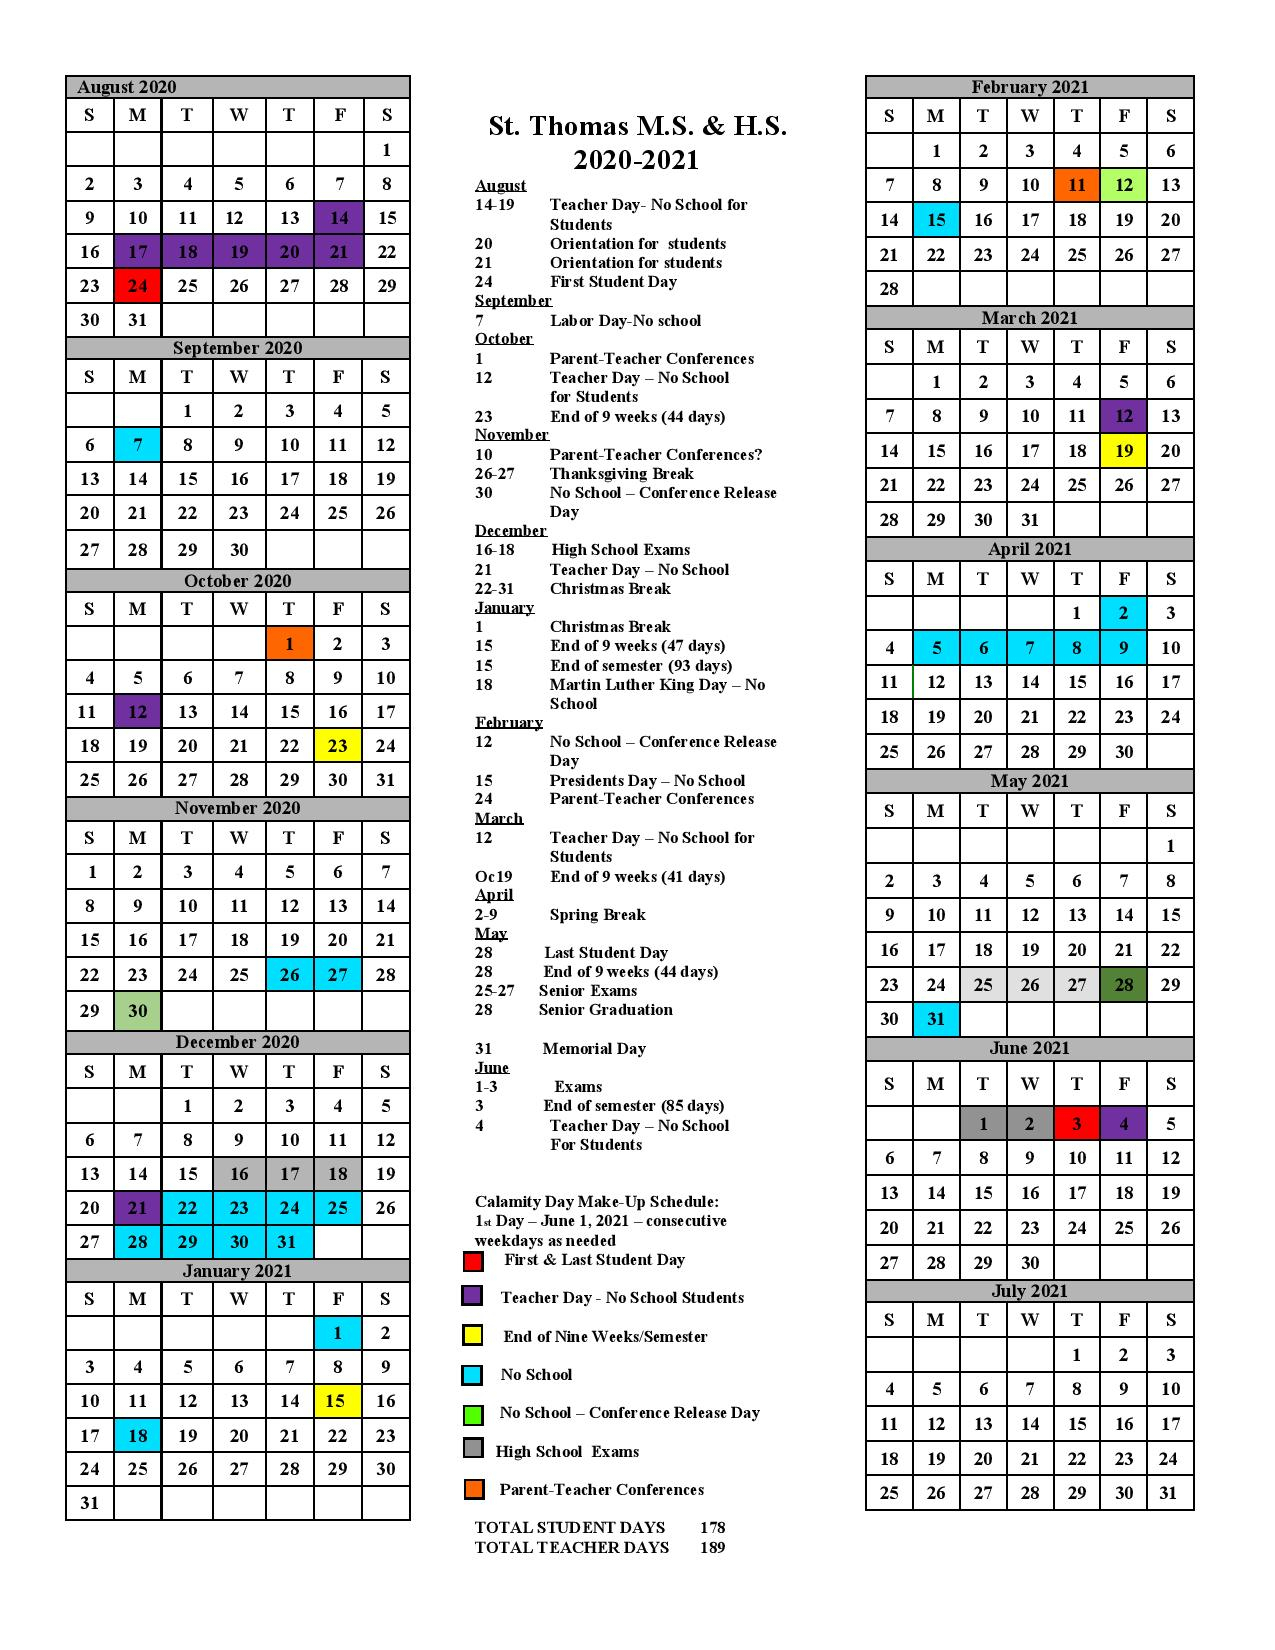 Holy Cross Academic Calendar 20222023